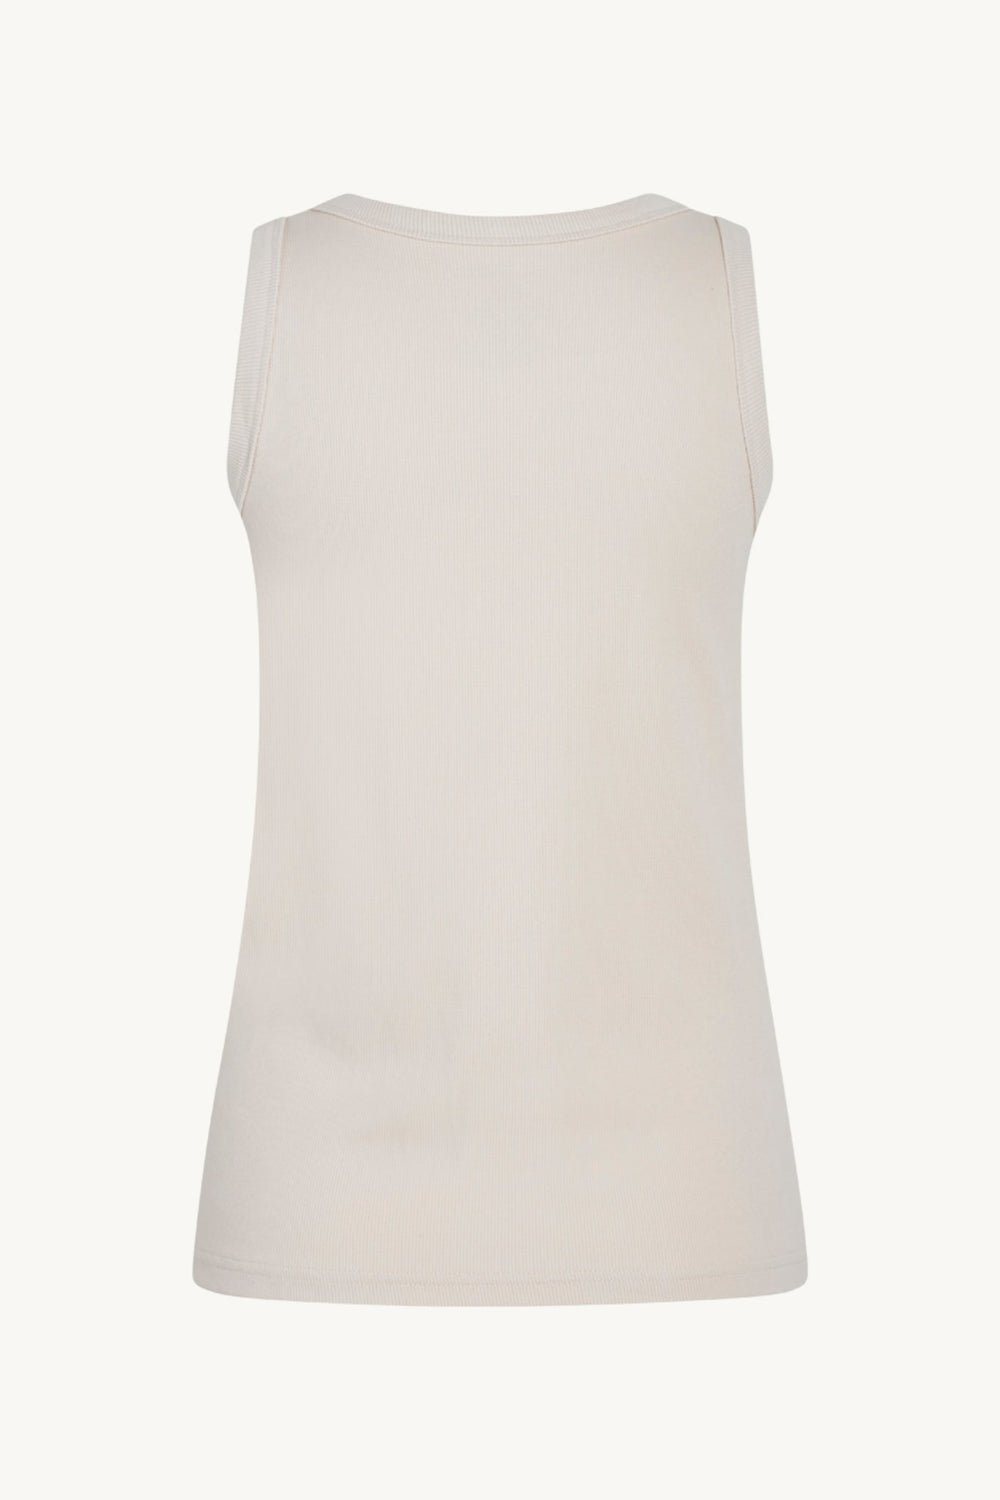 Avery-Cw T-Shirt Sand Stone | Skjorter og bluser | Smuk - Dameklær på nett